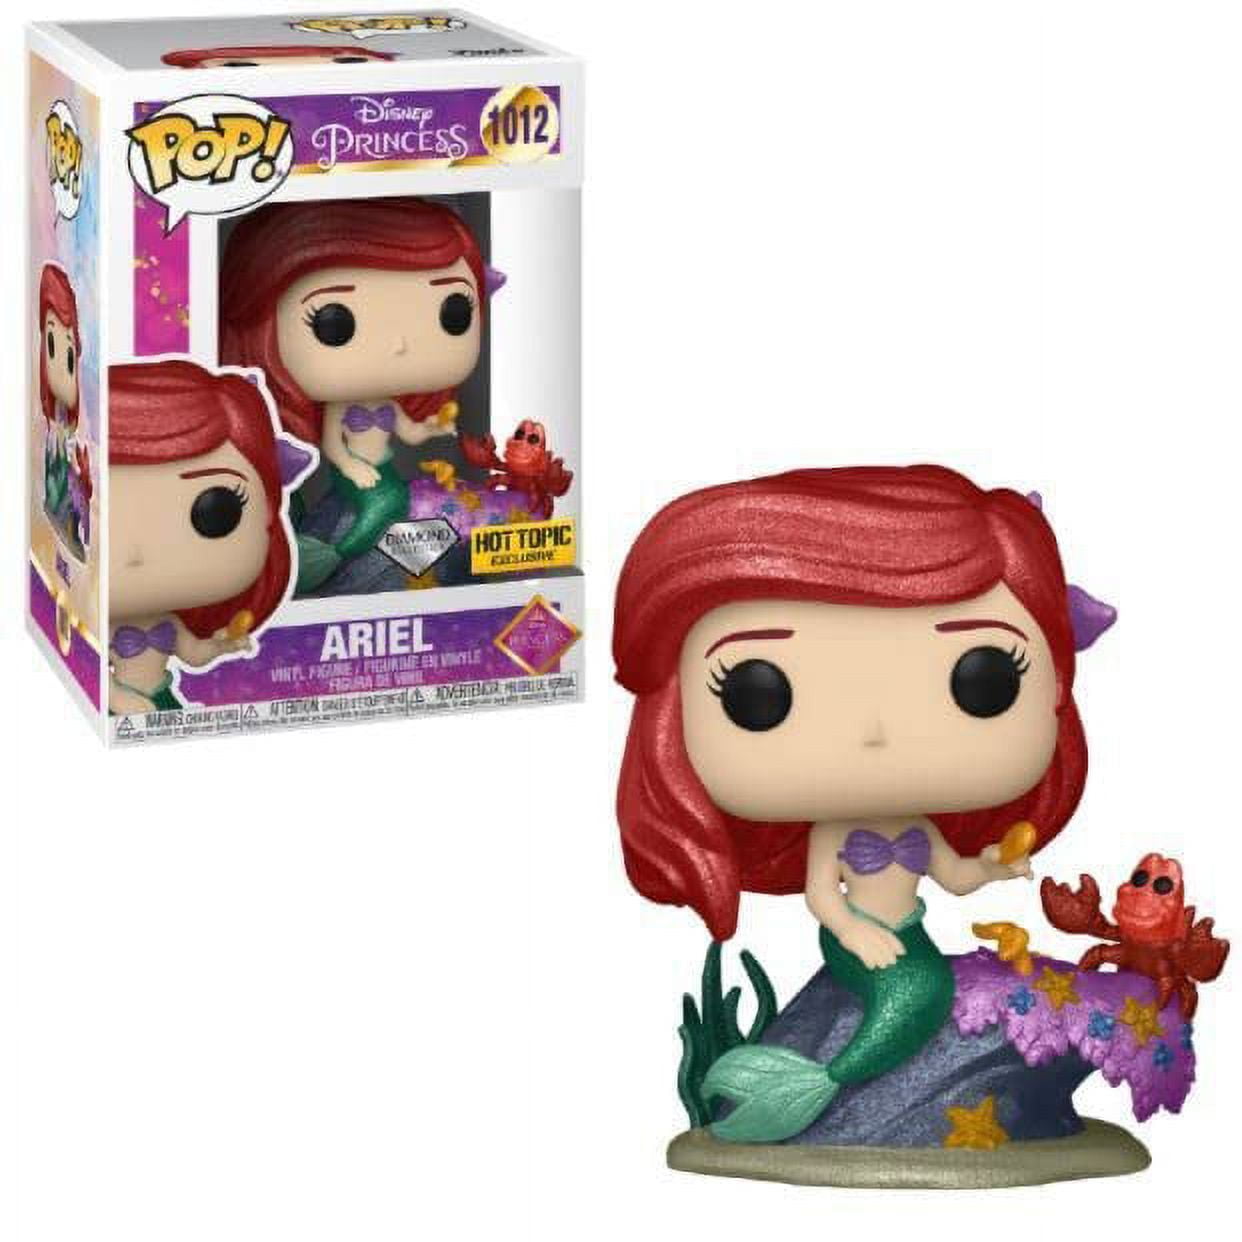 Ariel Ultimate Princesa Pop Disney 1012 em segunda mão durante 15